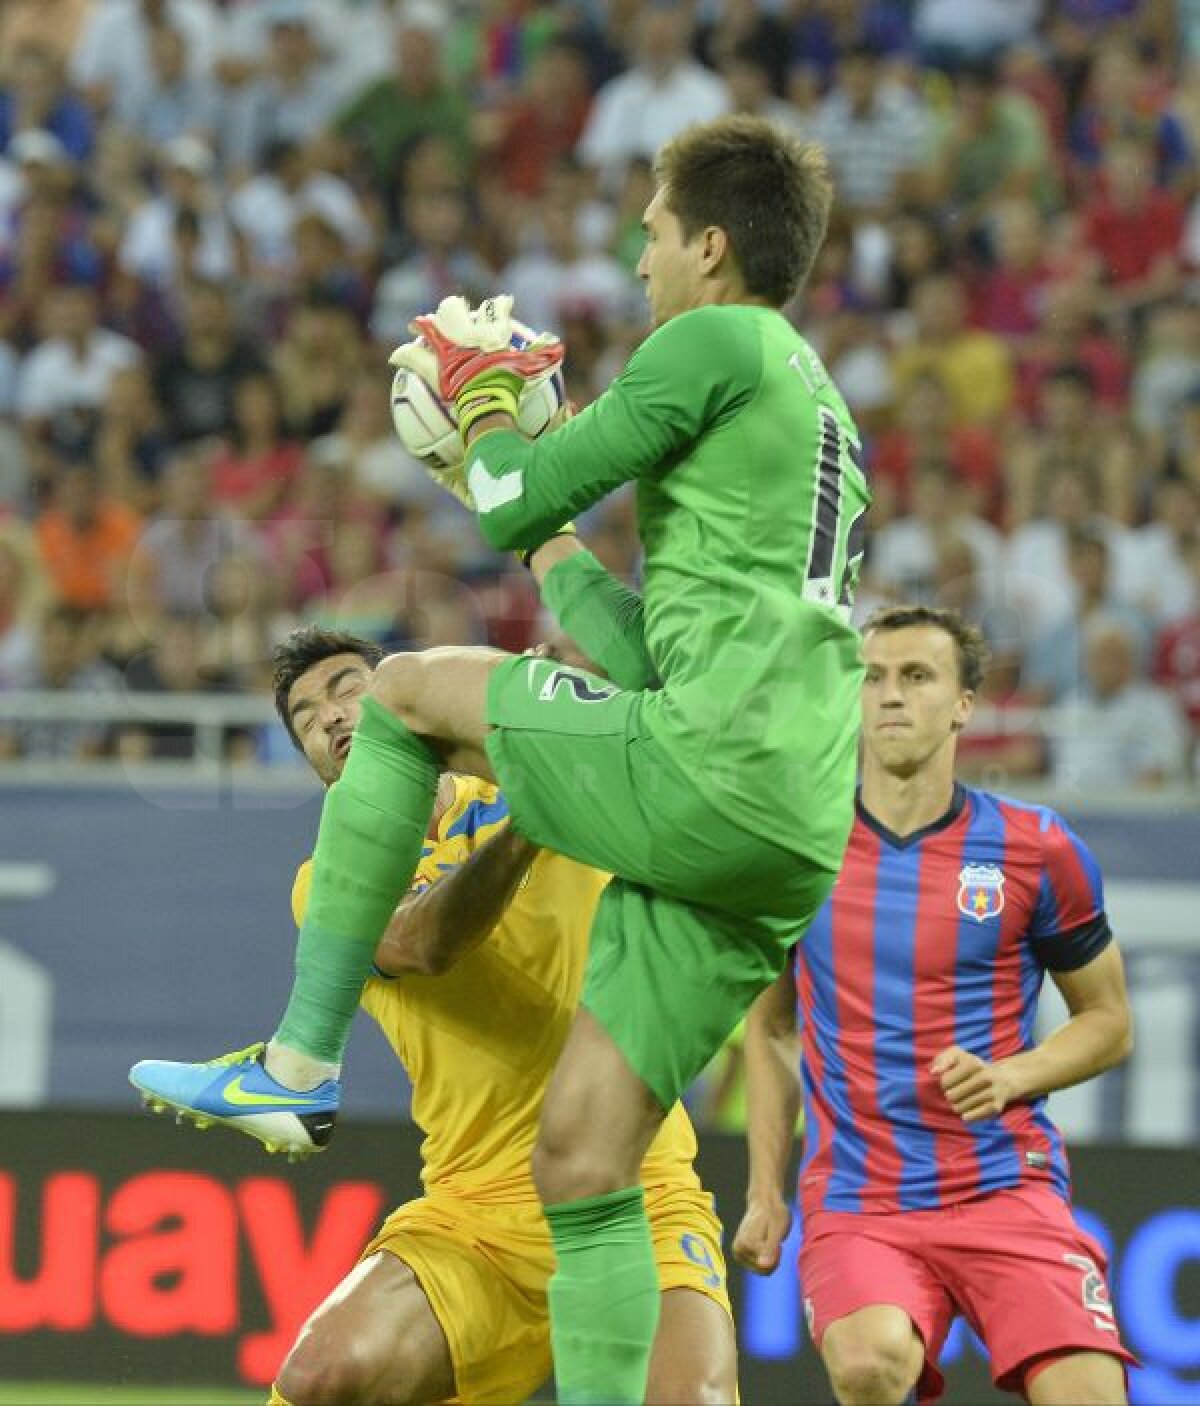 FOTO A şasea Supercupă » Steaua bifează al doilea trofeu în 2013, după 3-0 cu Petrolul